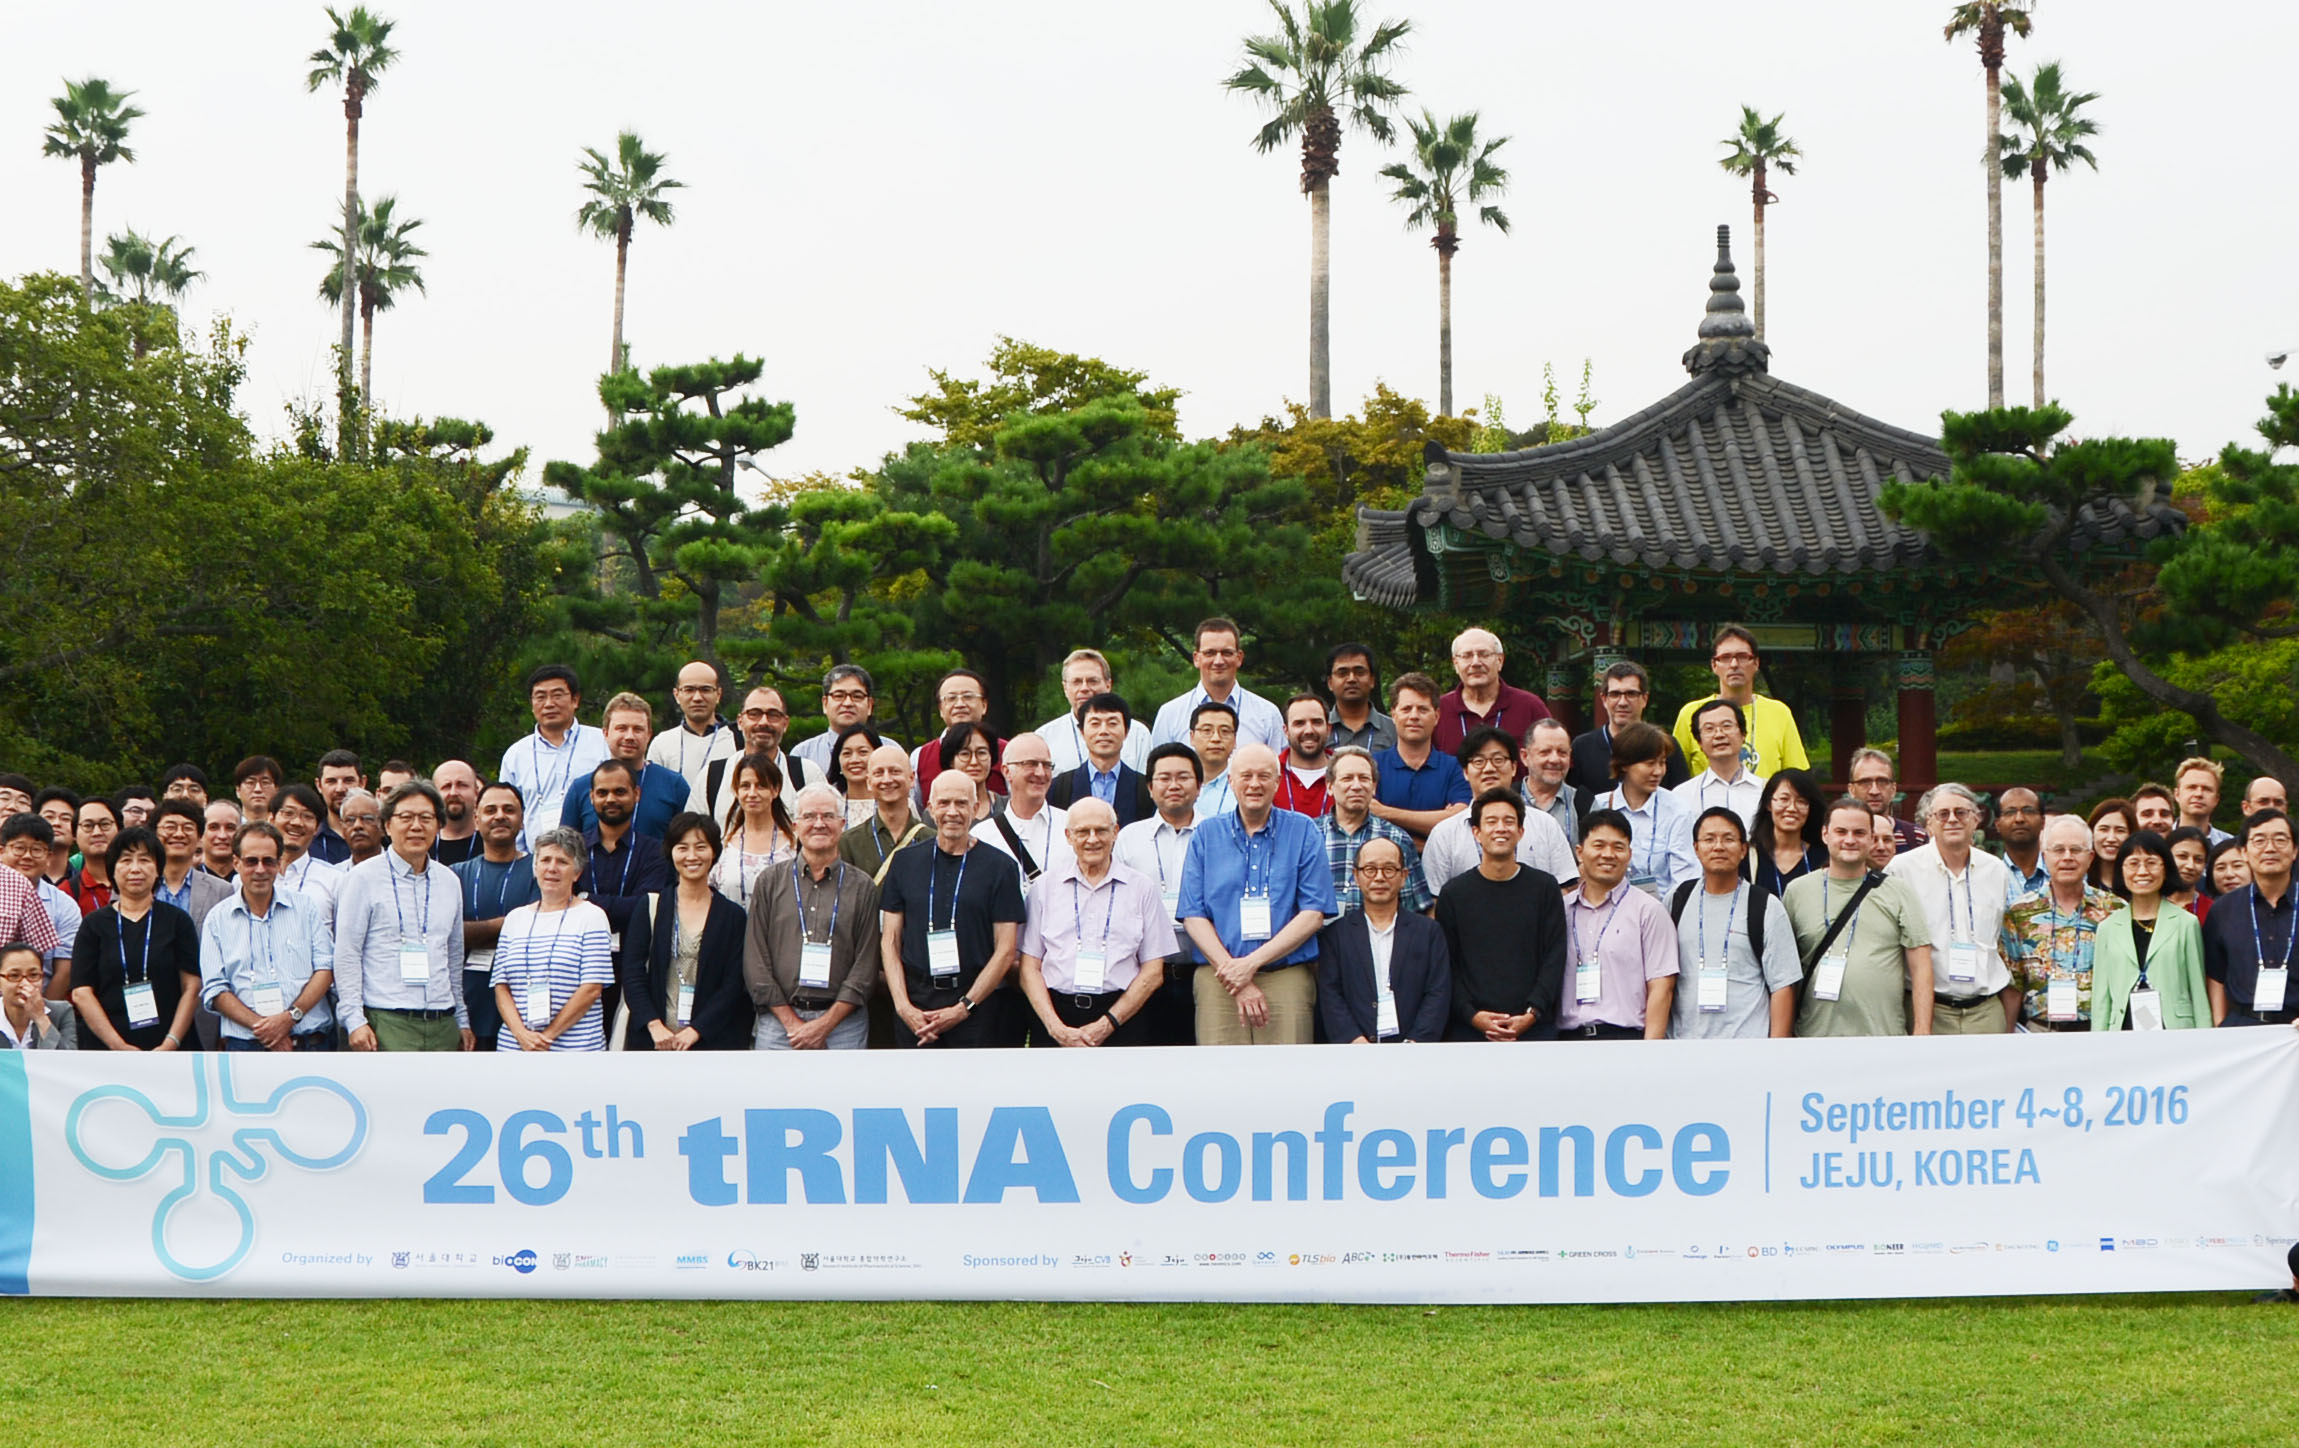 2016 26th tRNA Conference, Jeju, Korea